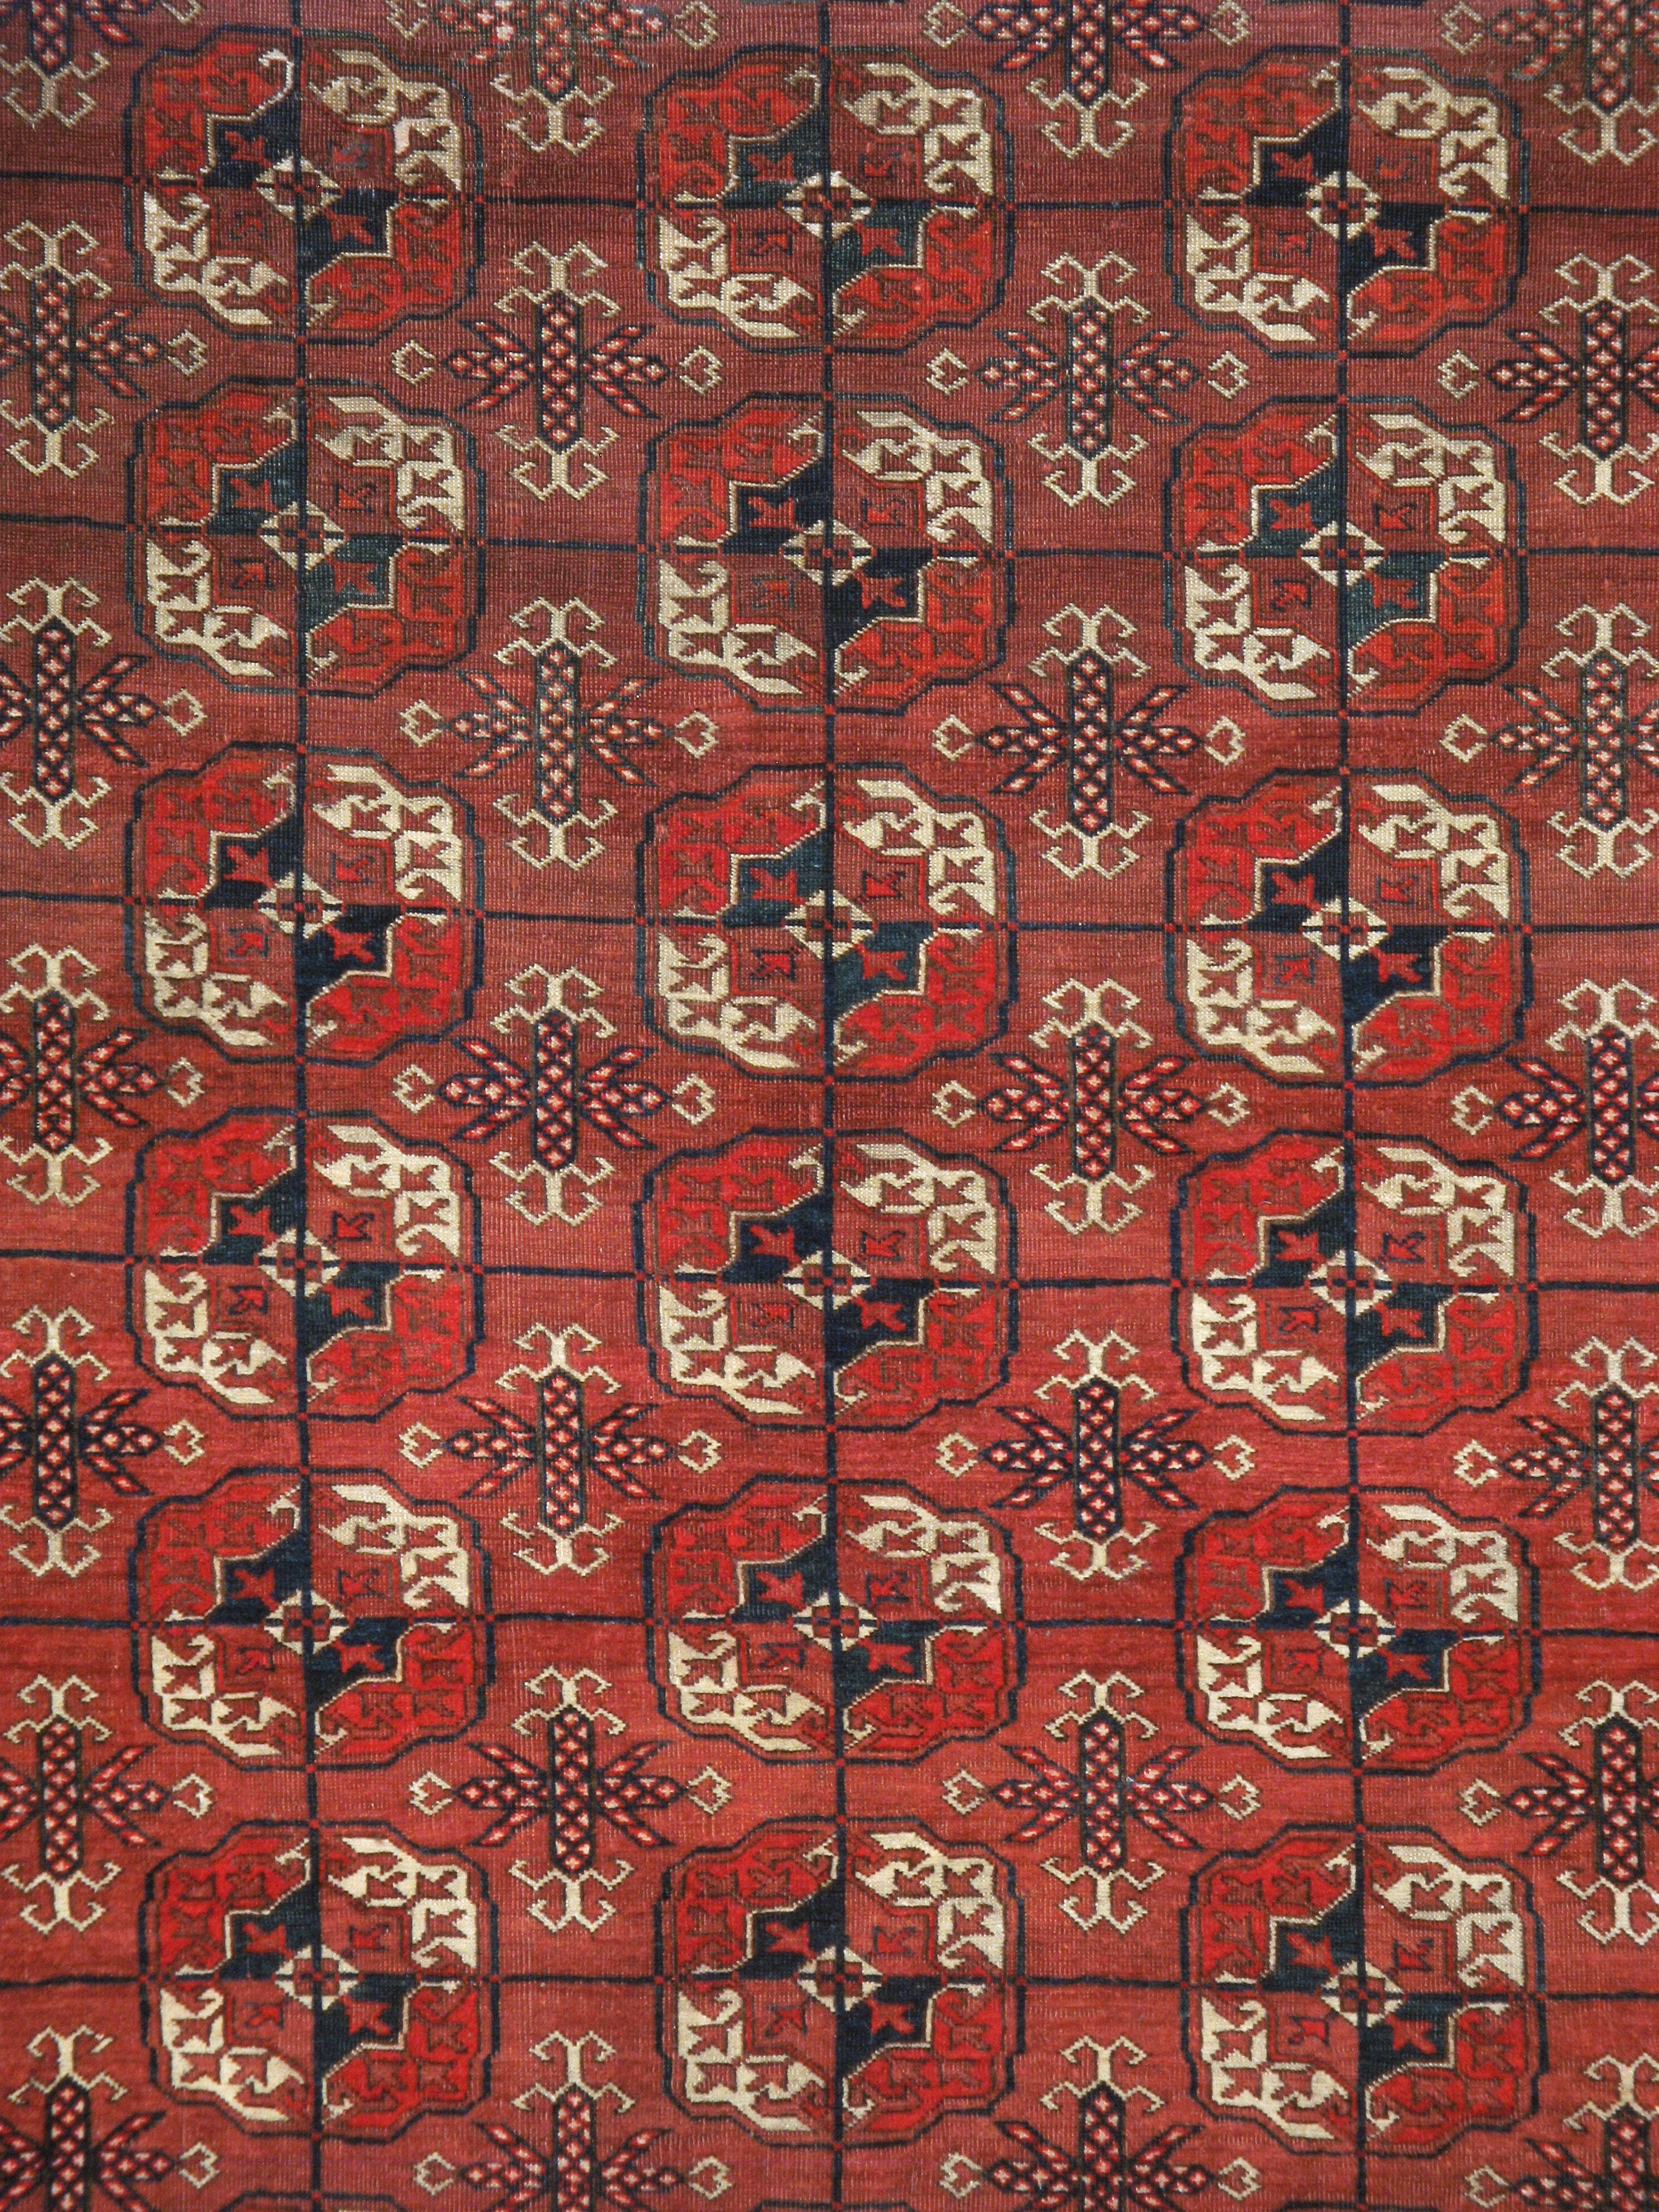 Un ancien tapis Tekke d'Asie centrale. Provenant de la plus importante tribu de tissage turkmène du Turkménistan, ce tapis nomade rouge sang présente cinq colonnes de onze médaillons gul (fleurs) caractéristiques dans une bordure de couleur assortie